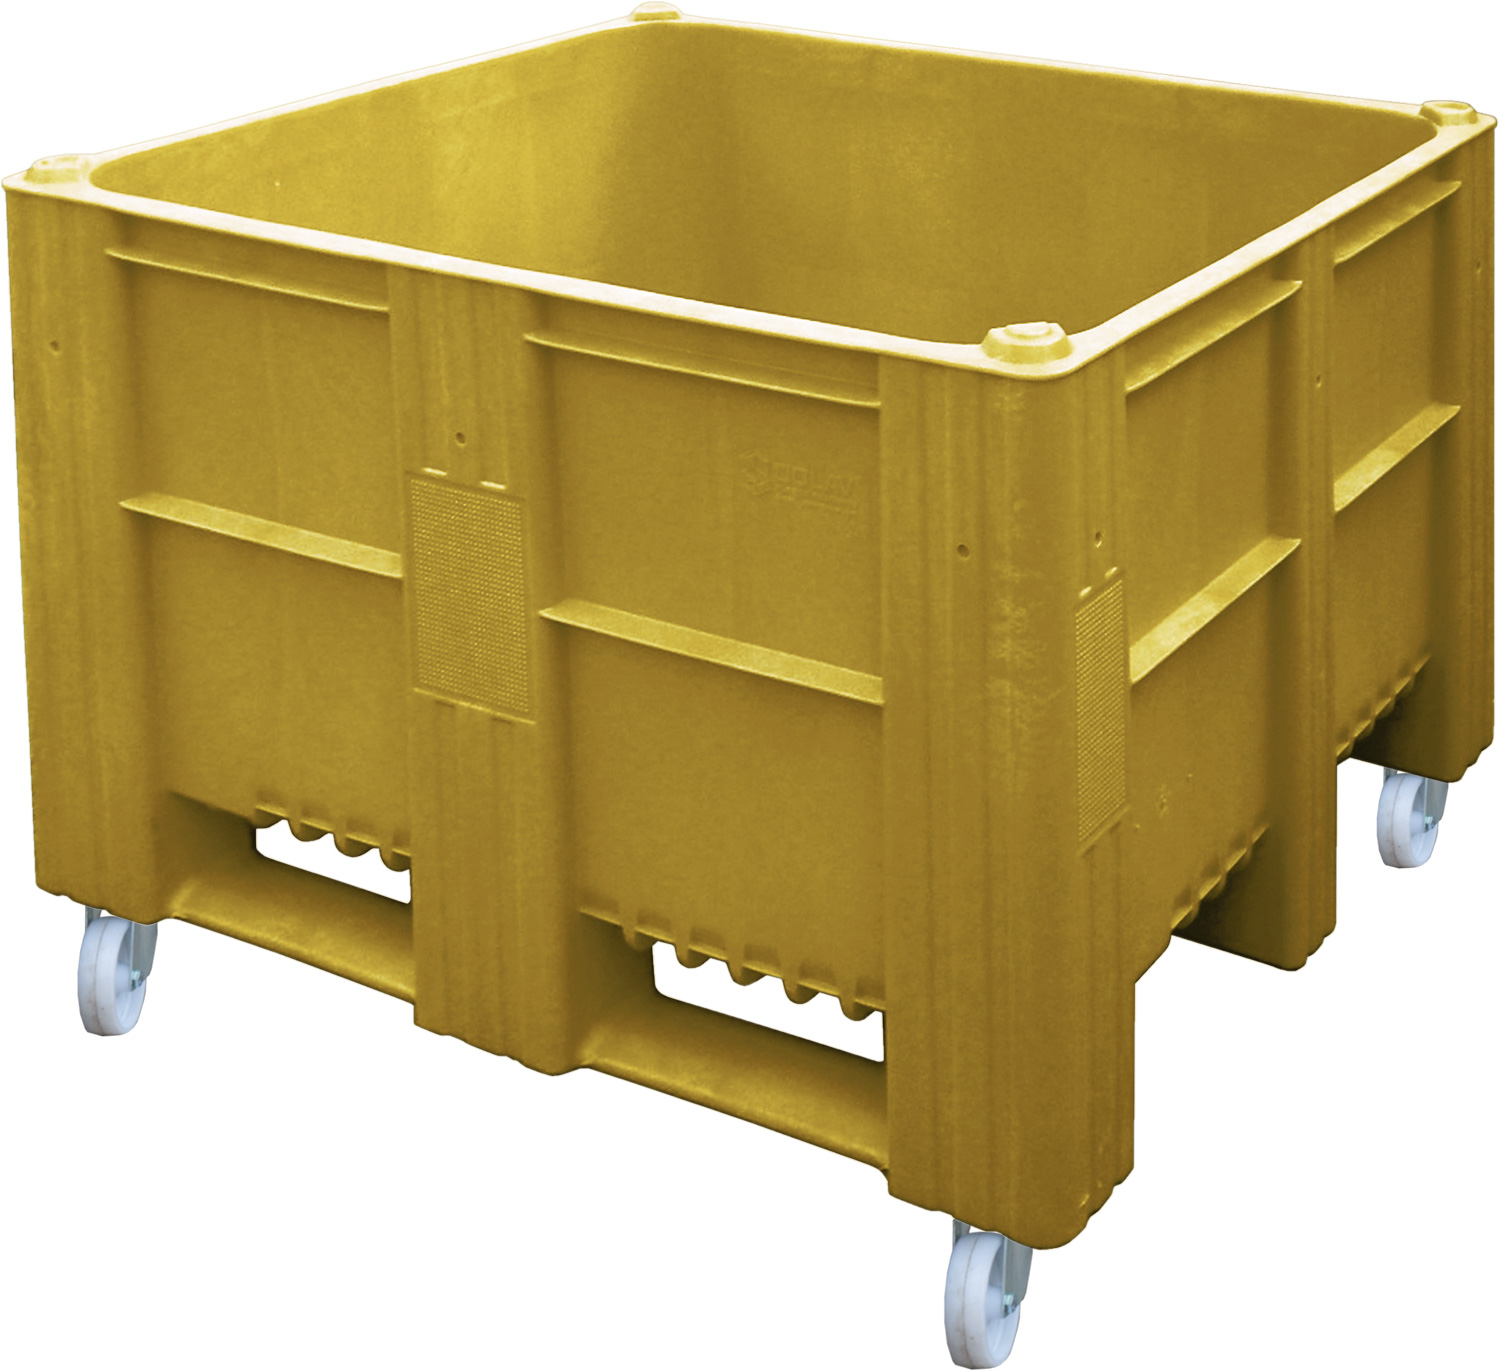 BoxPallet сплошной на колесах желтый 11-100-WA ACE (Вар.1) Полиэтилен низкого давления (HDPE)